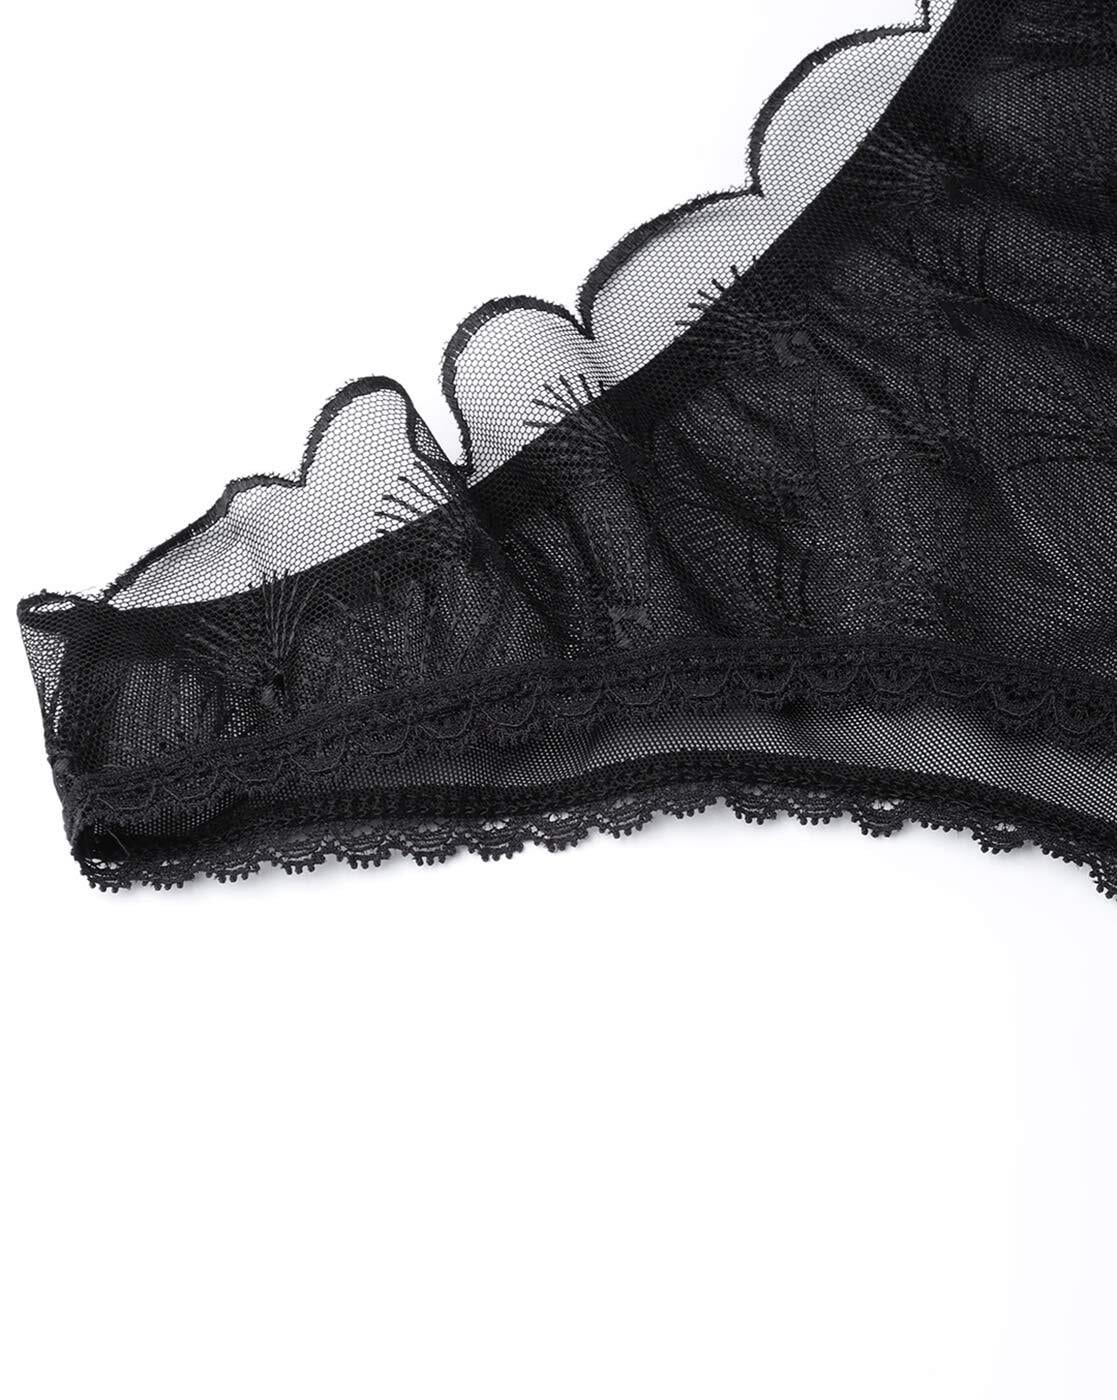 Buy Black Panties for Women by EROTISSCH Online